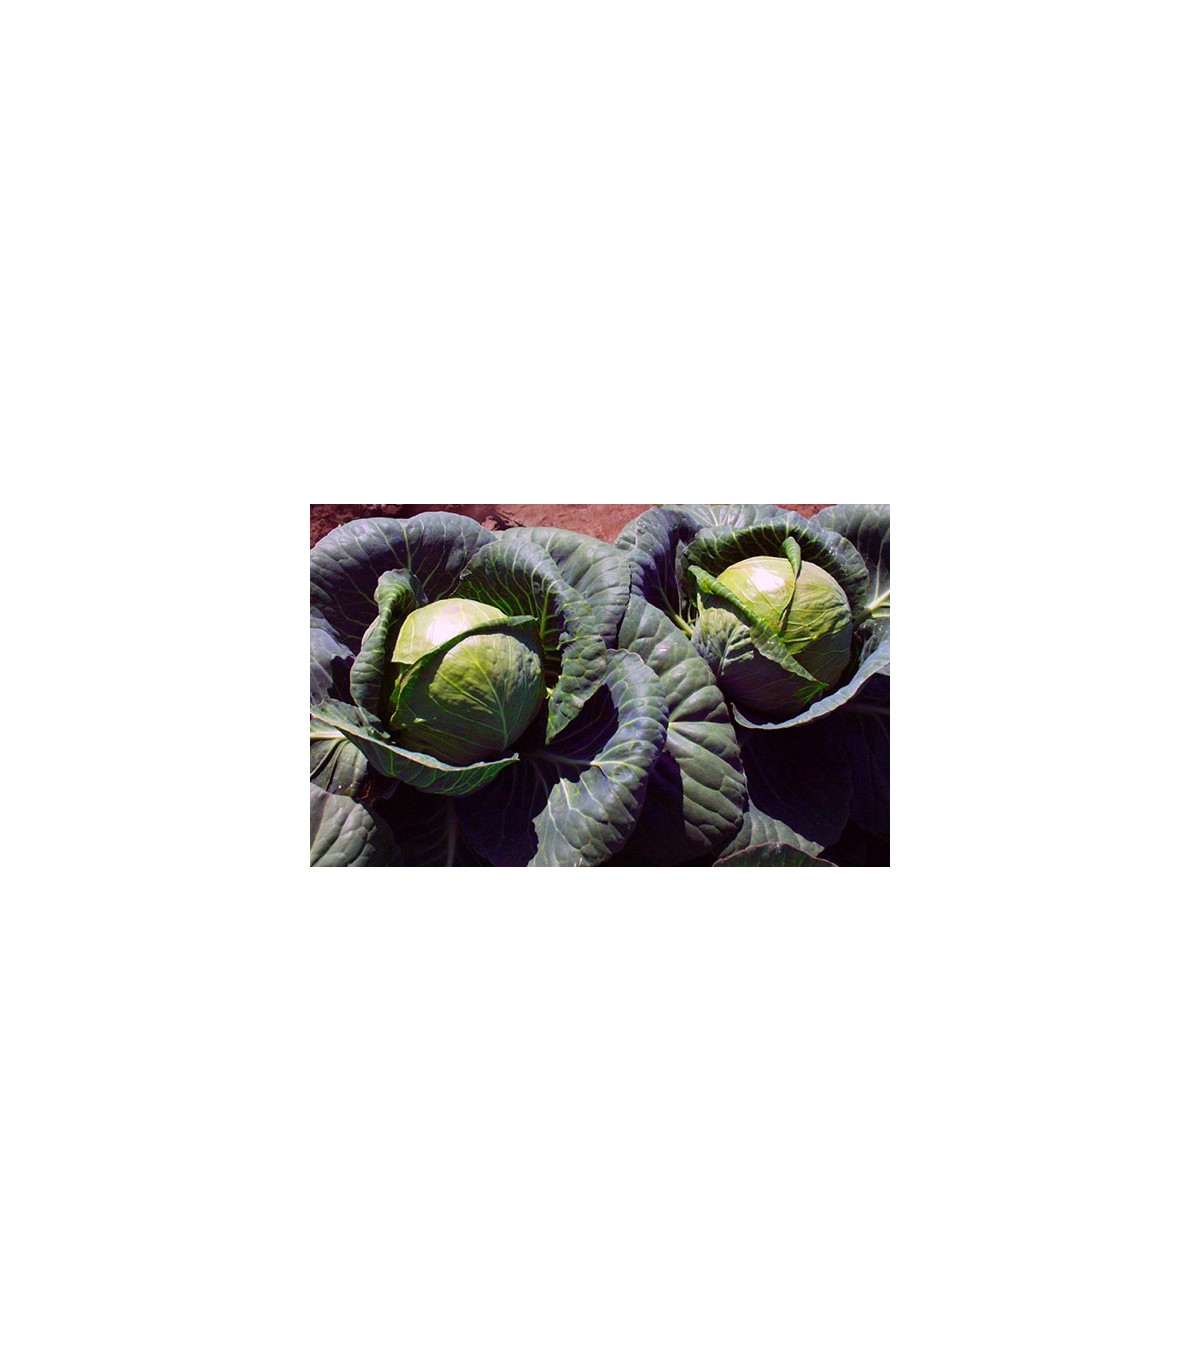 BIO Červená kapusta Marner - Brassica oleracea - semená - 0,3 g